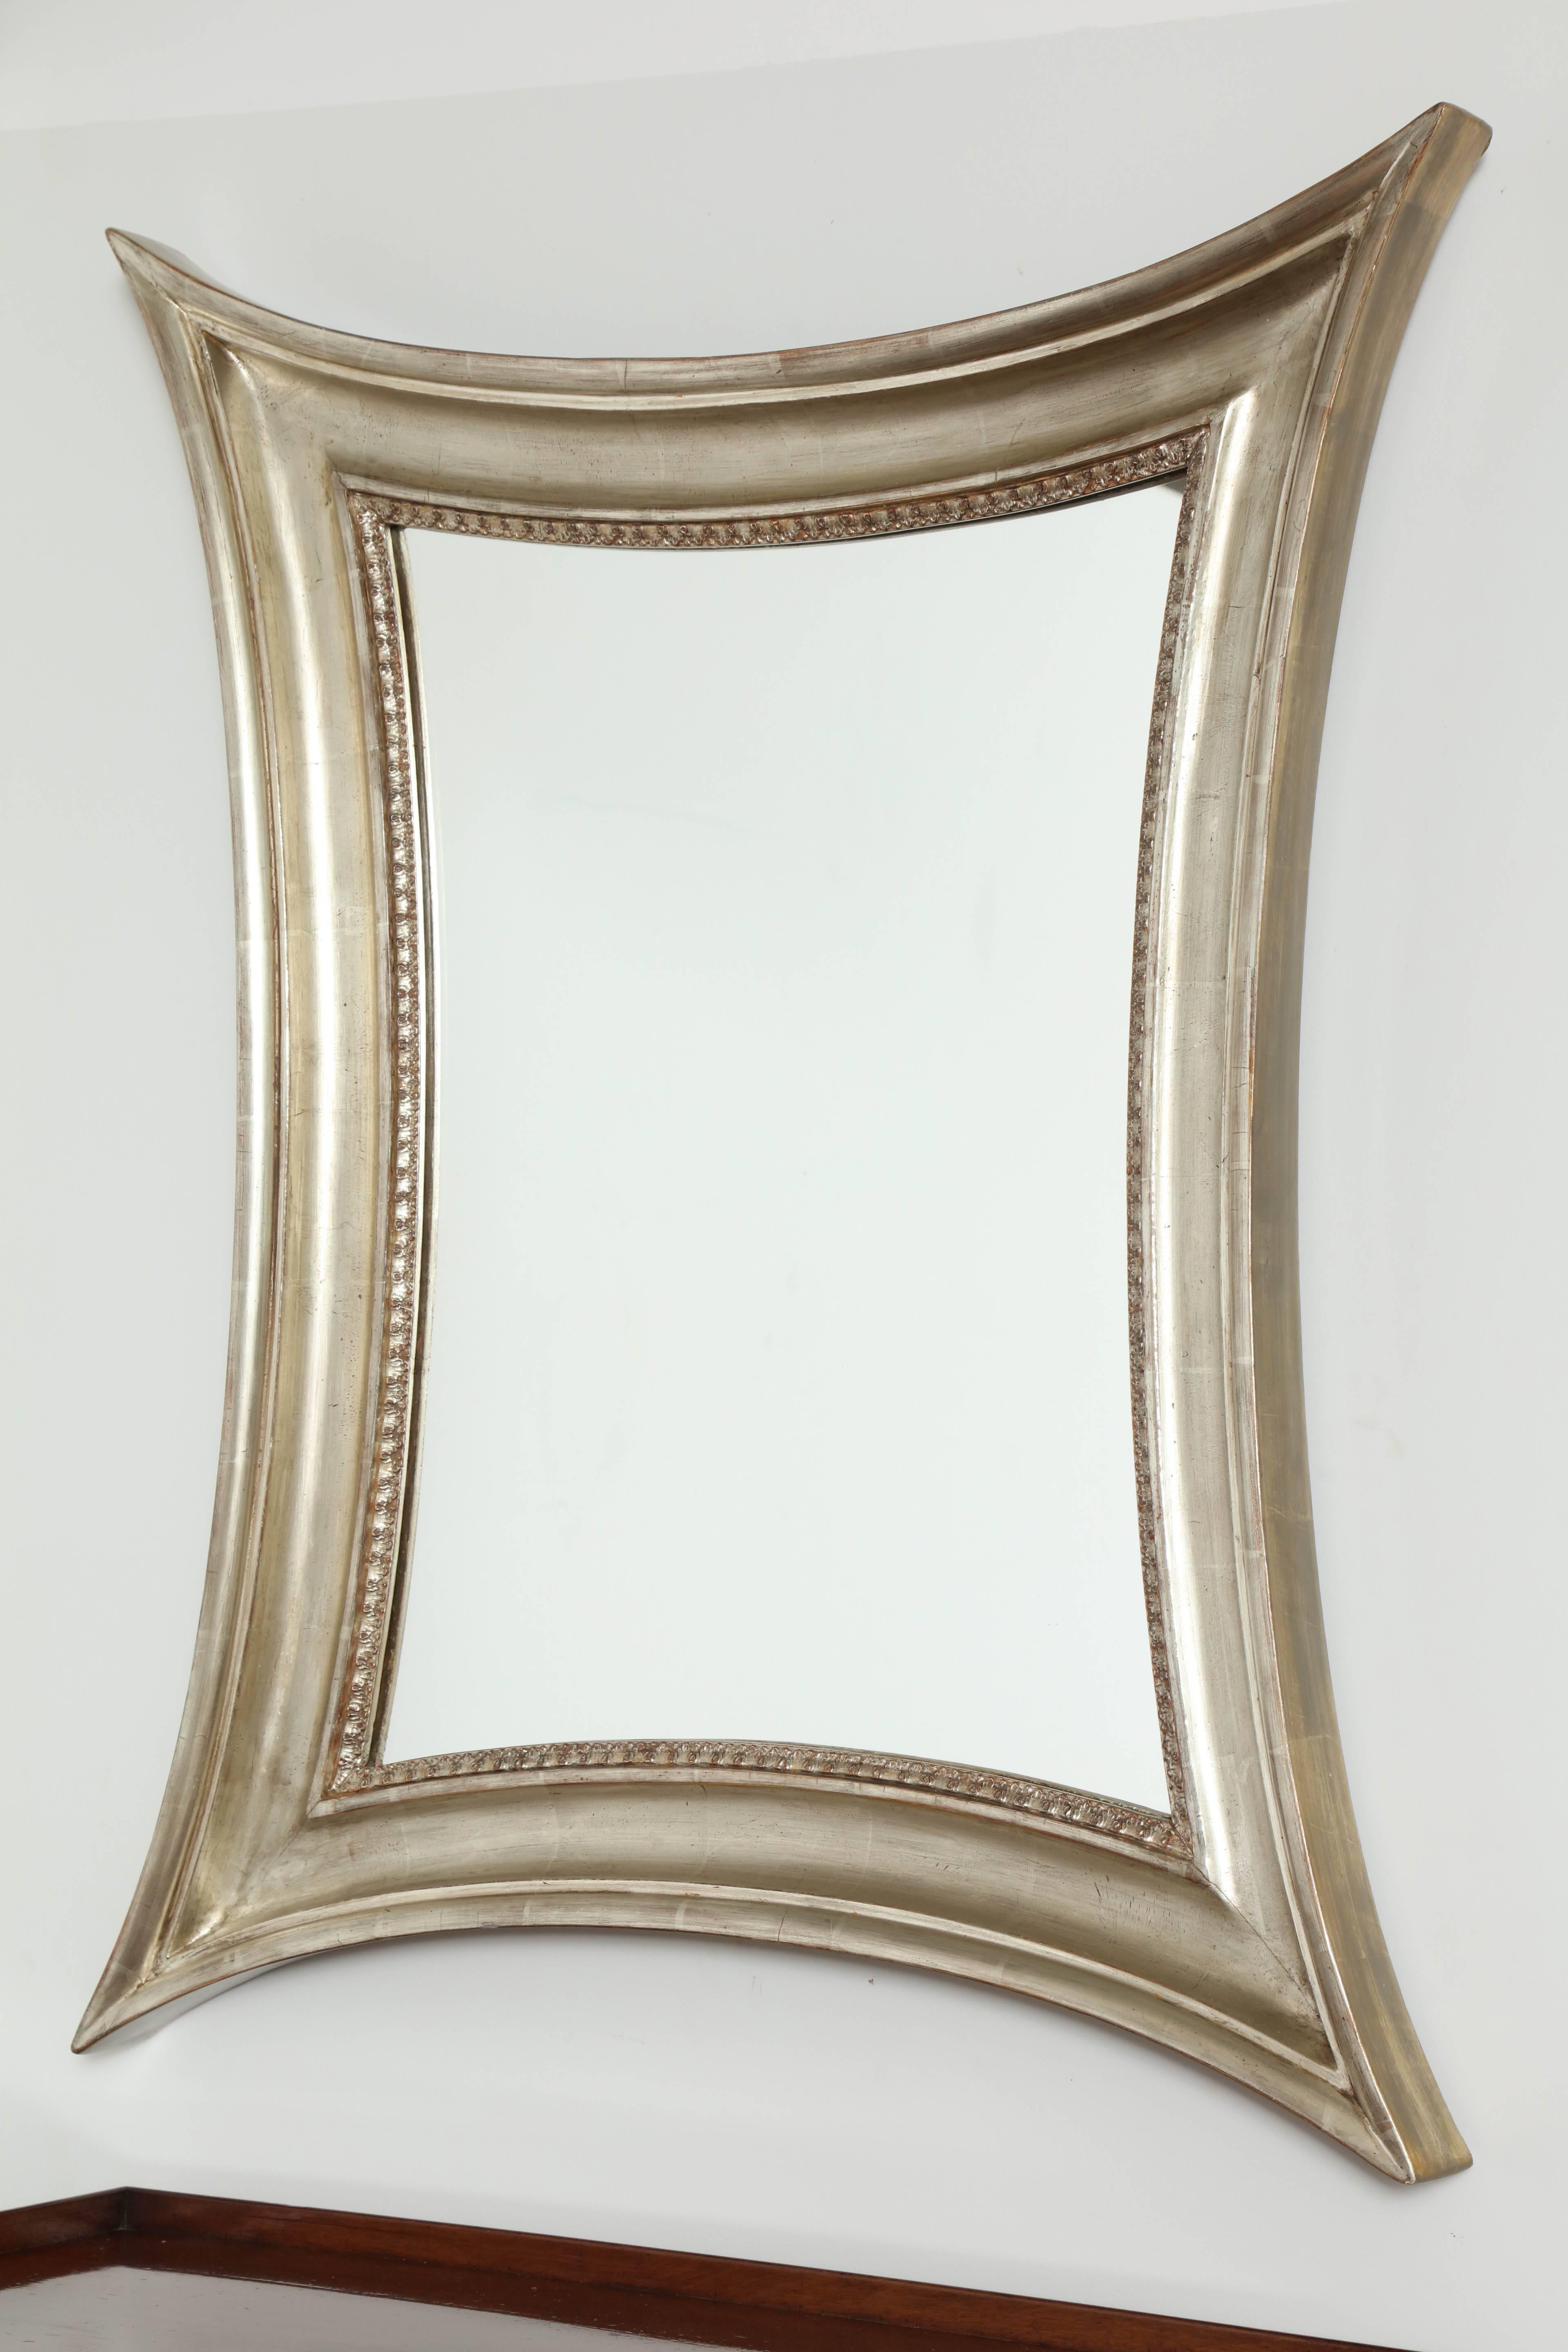 Un miroir danois en bois doré argenté, vers les années 1860, avec des côtés concaves et un cadre à section en creux profond et un bord intérieur moulé et feuillagé. Miroir remplacé mais pas neuf.